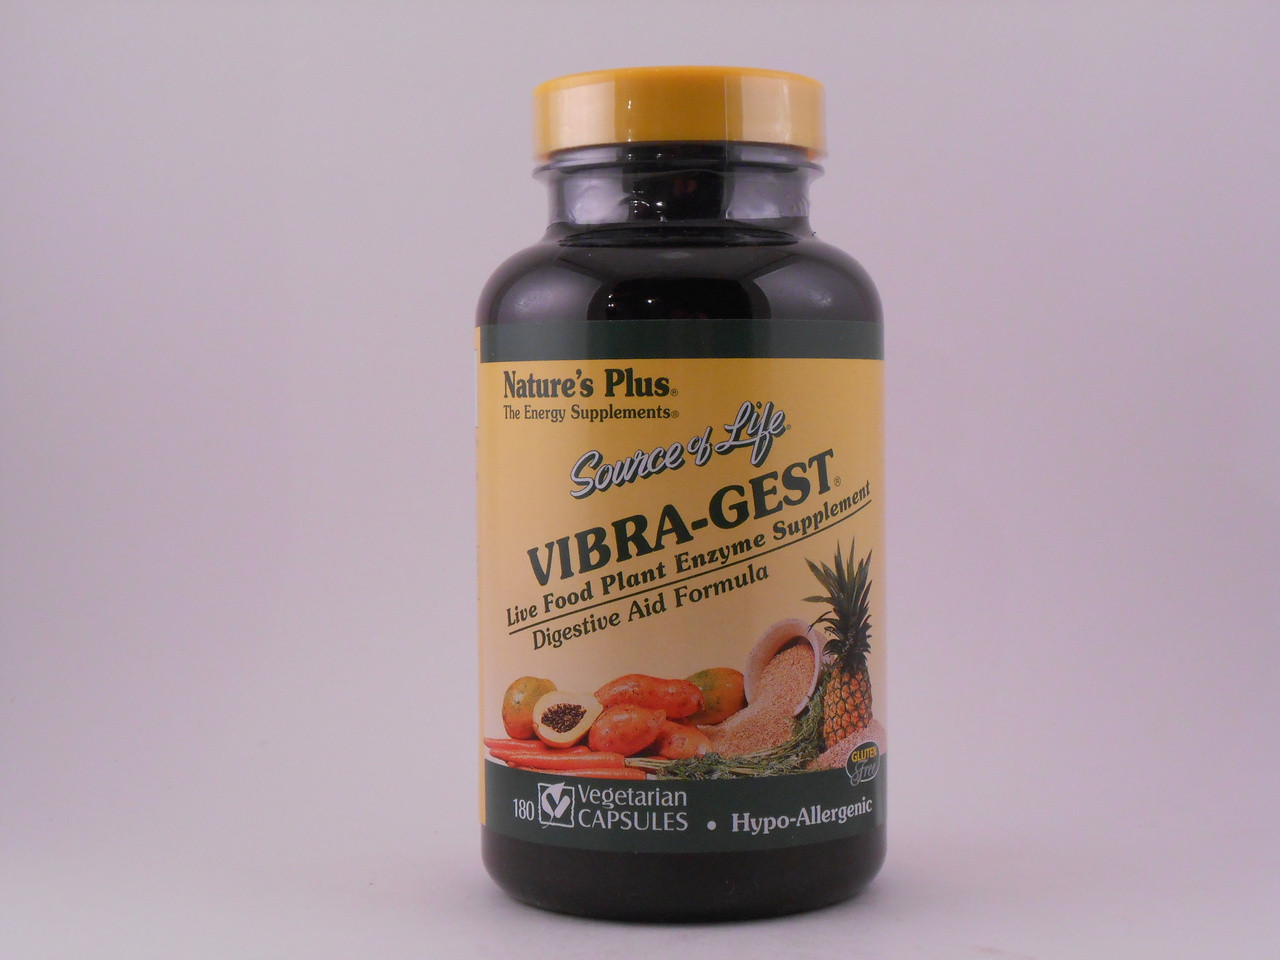 Vibra-Gest Plant Enzyme 180 VCaps